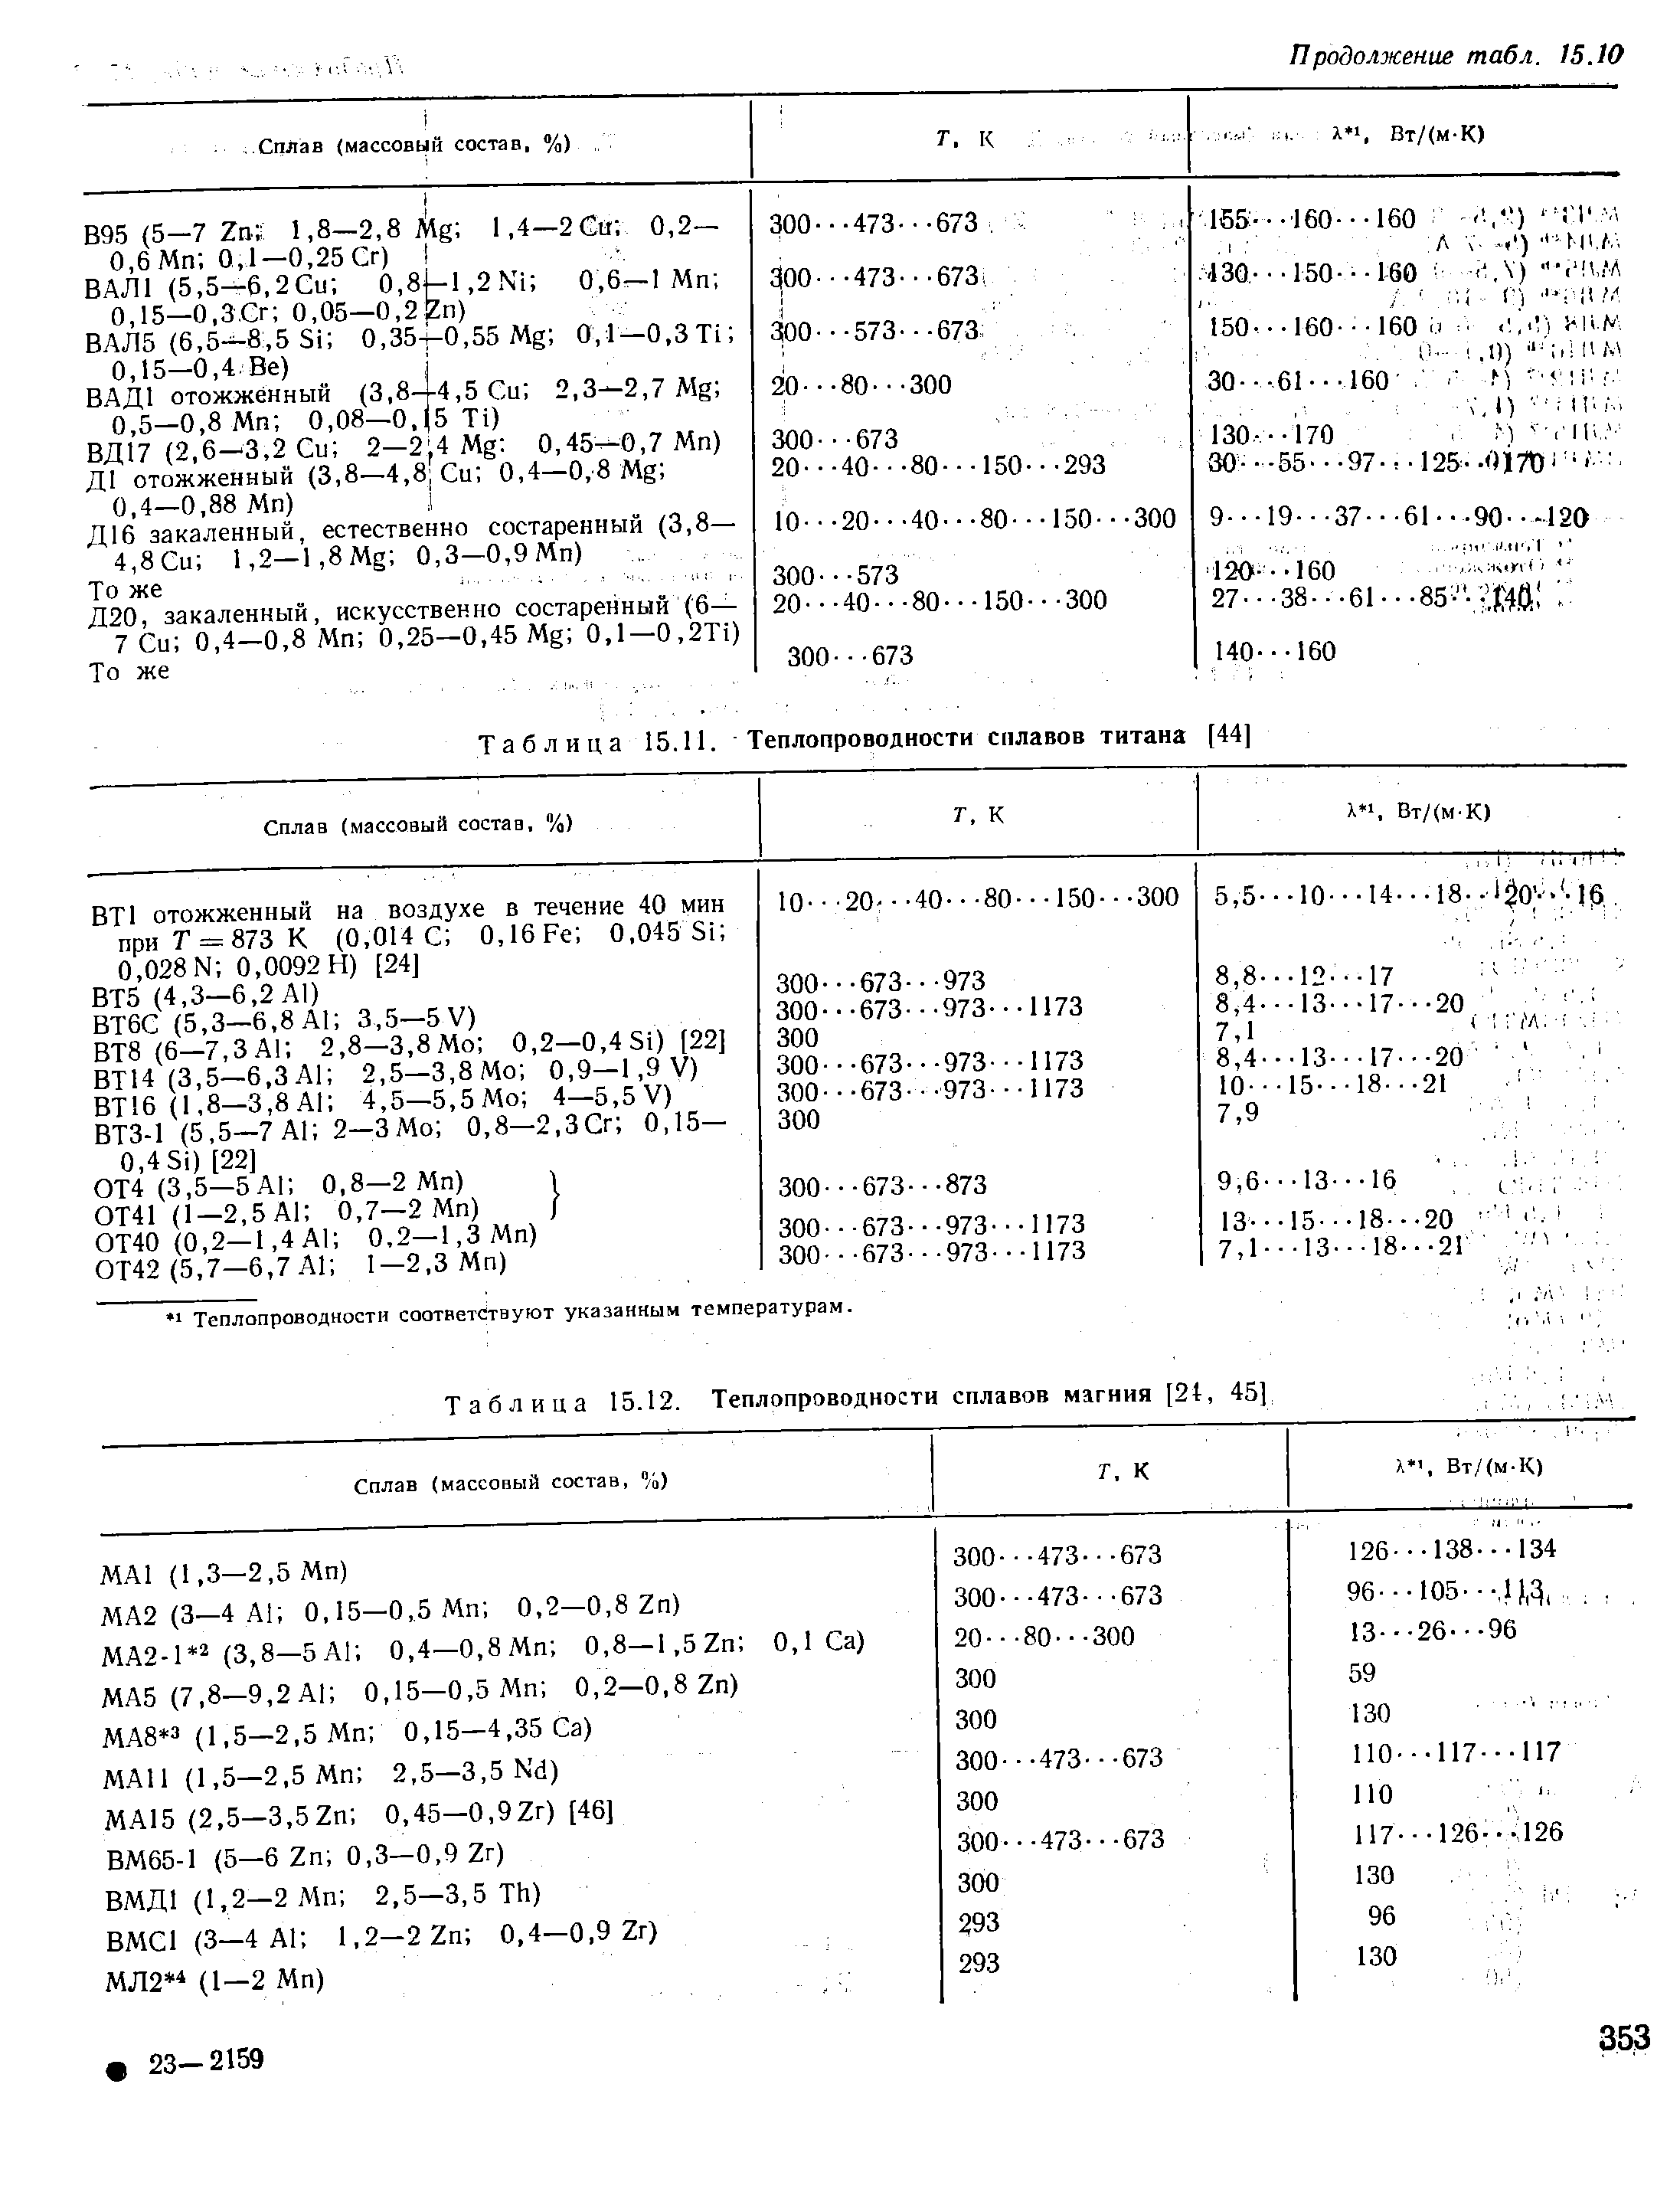 Таблица 15.12. Теплопроводности сплавов магния [24, 45]
